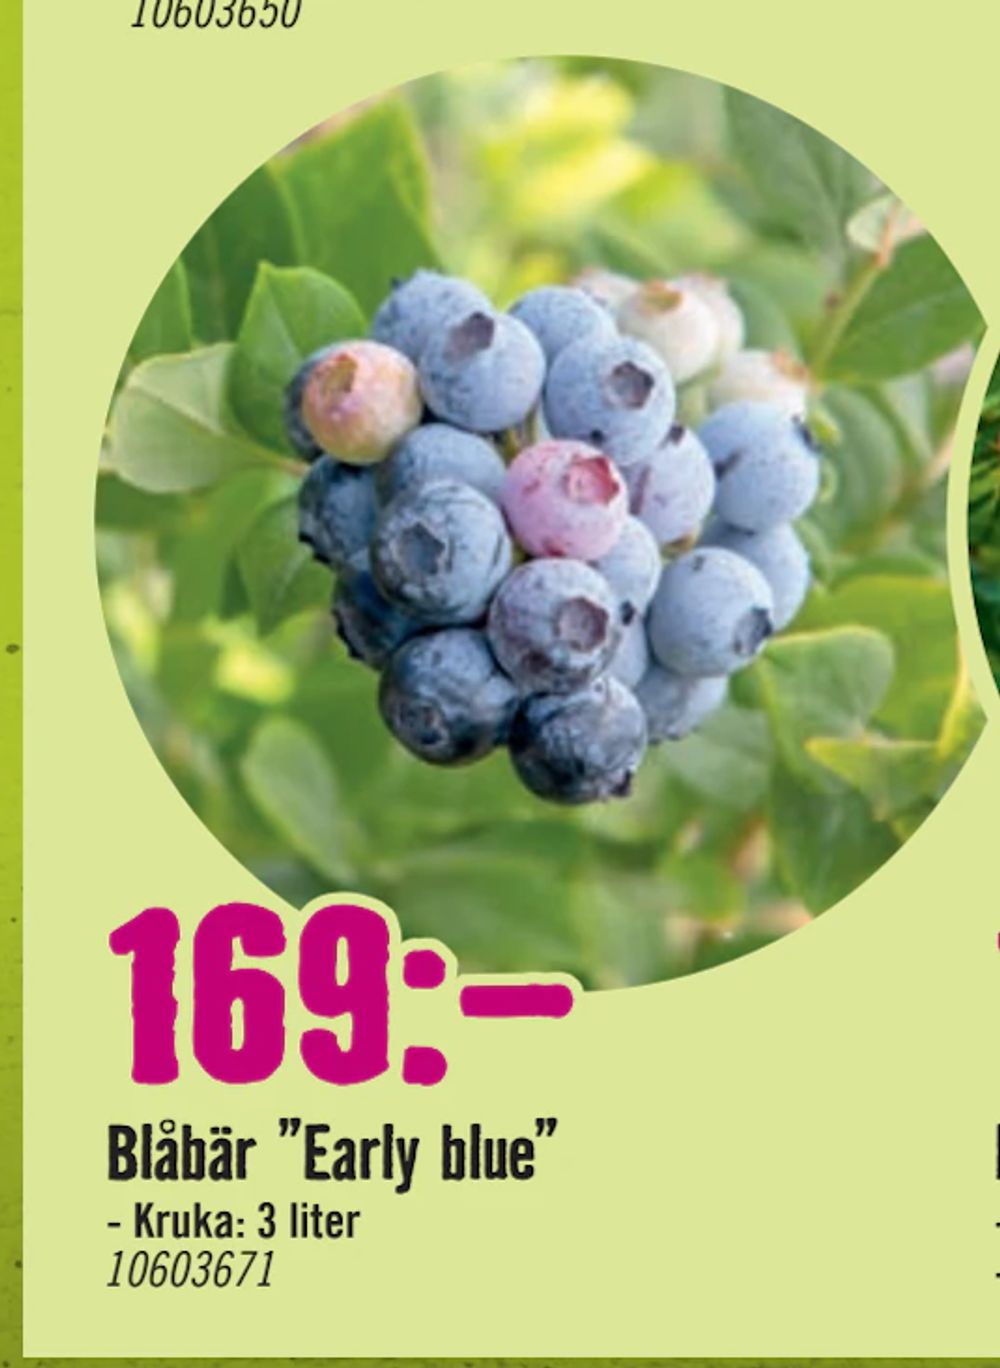 Erbjudanden på Blåbär ”Early blue” från Hornbach för 169 kr